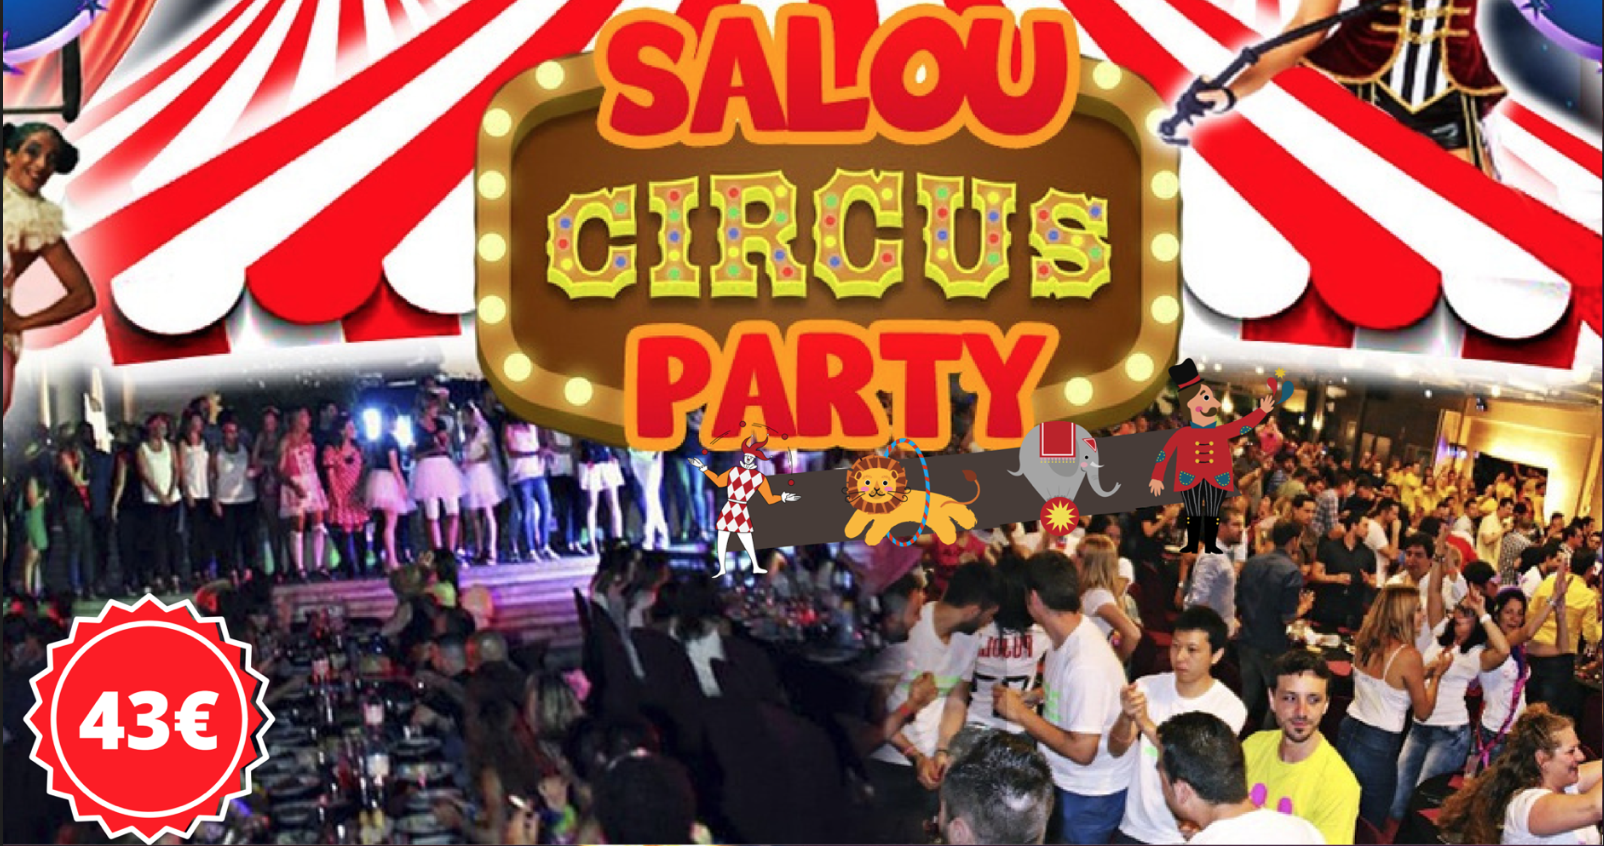 Despedidas en Salou circus party